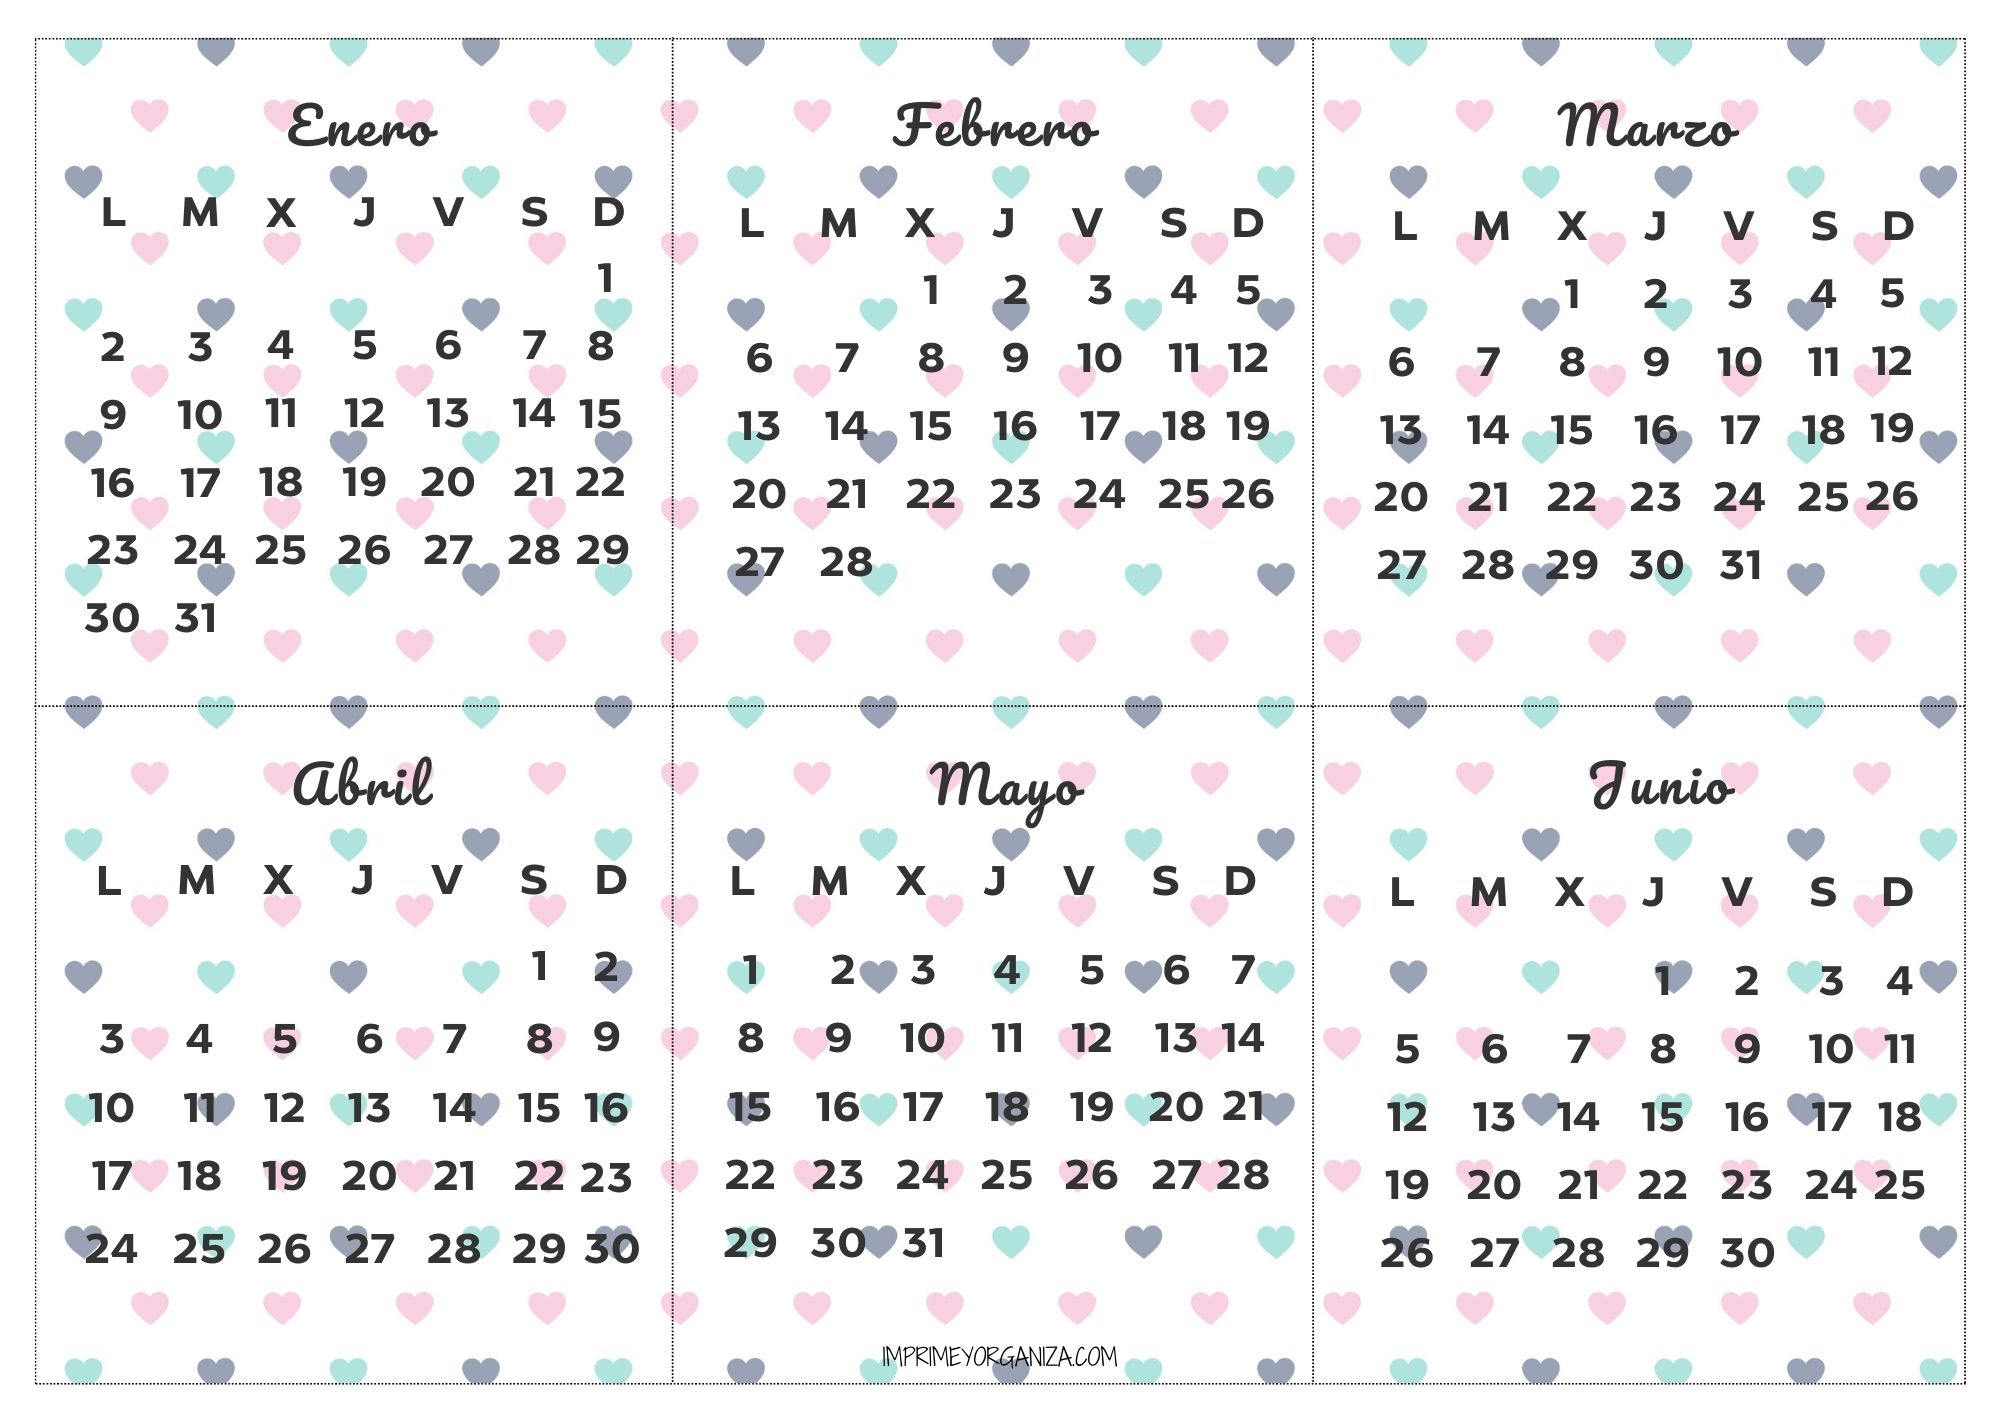 Imprimeyorganiza com Calendarios Mensuales 2023 - Imprime y Organiza